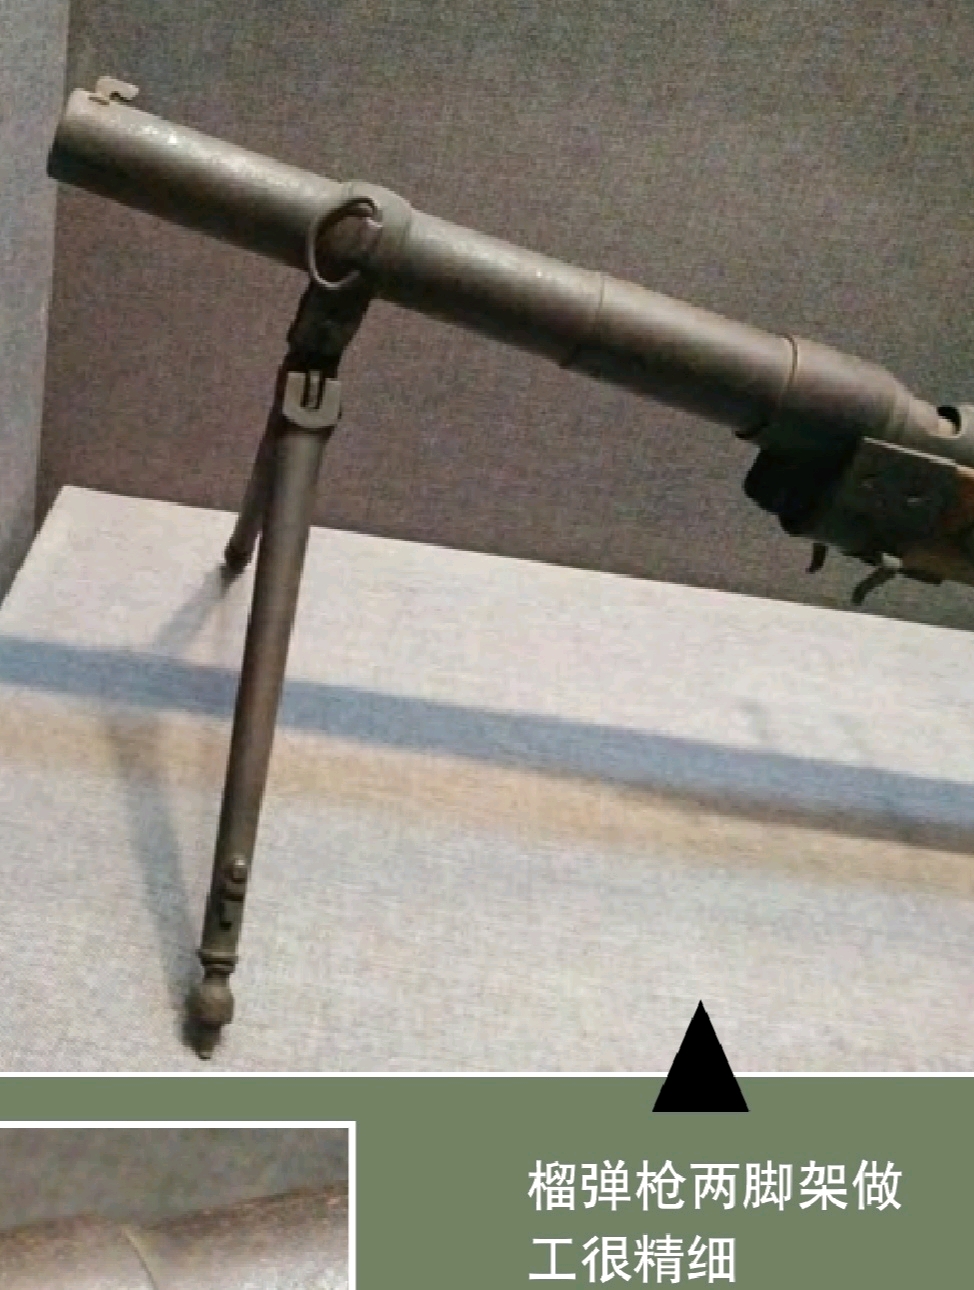 抗日战争榴弹发射器步兵炮半自动步枪八路军自制的那些明星武器